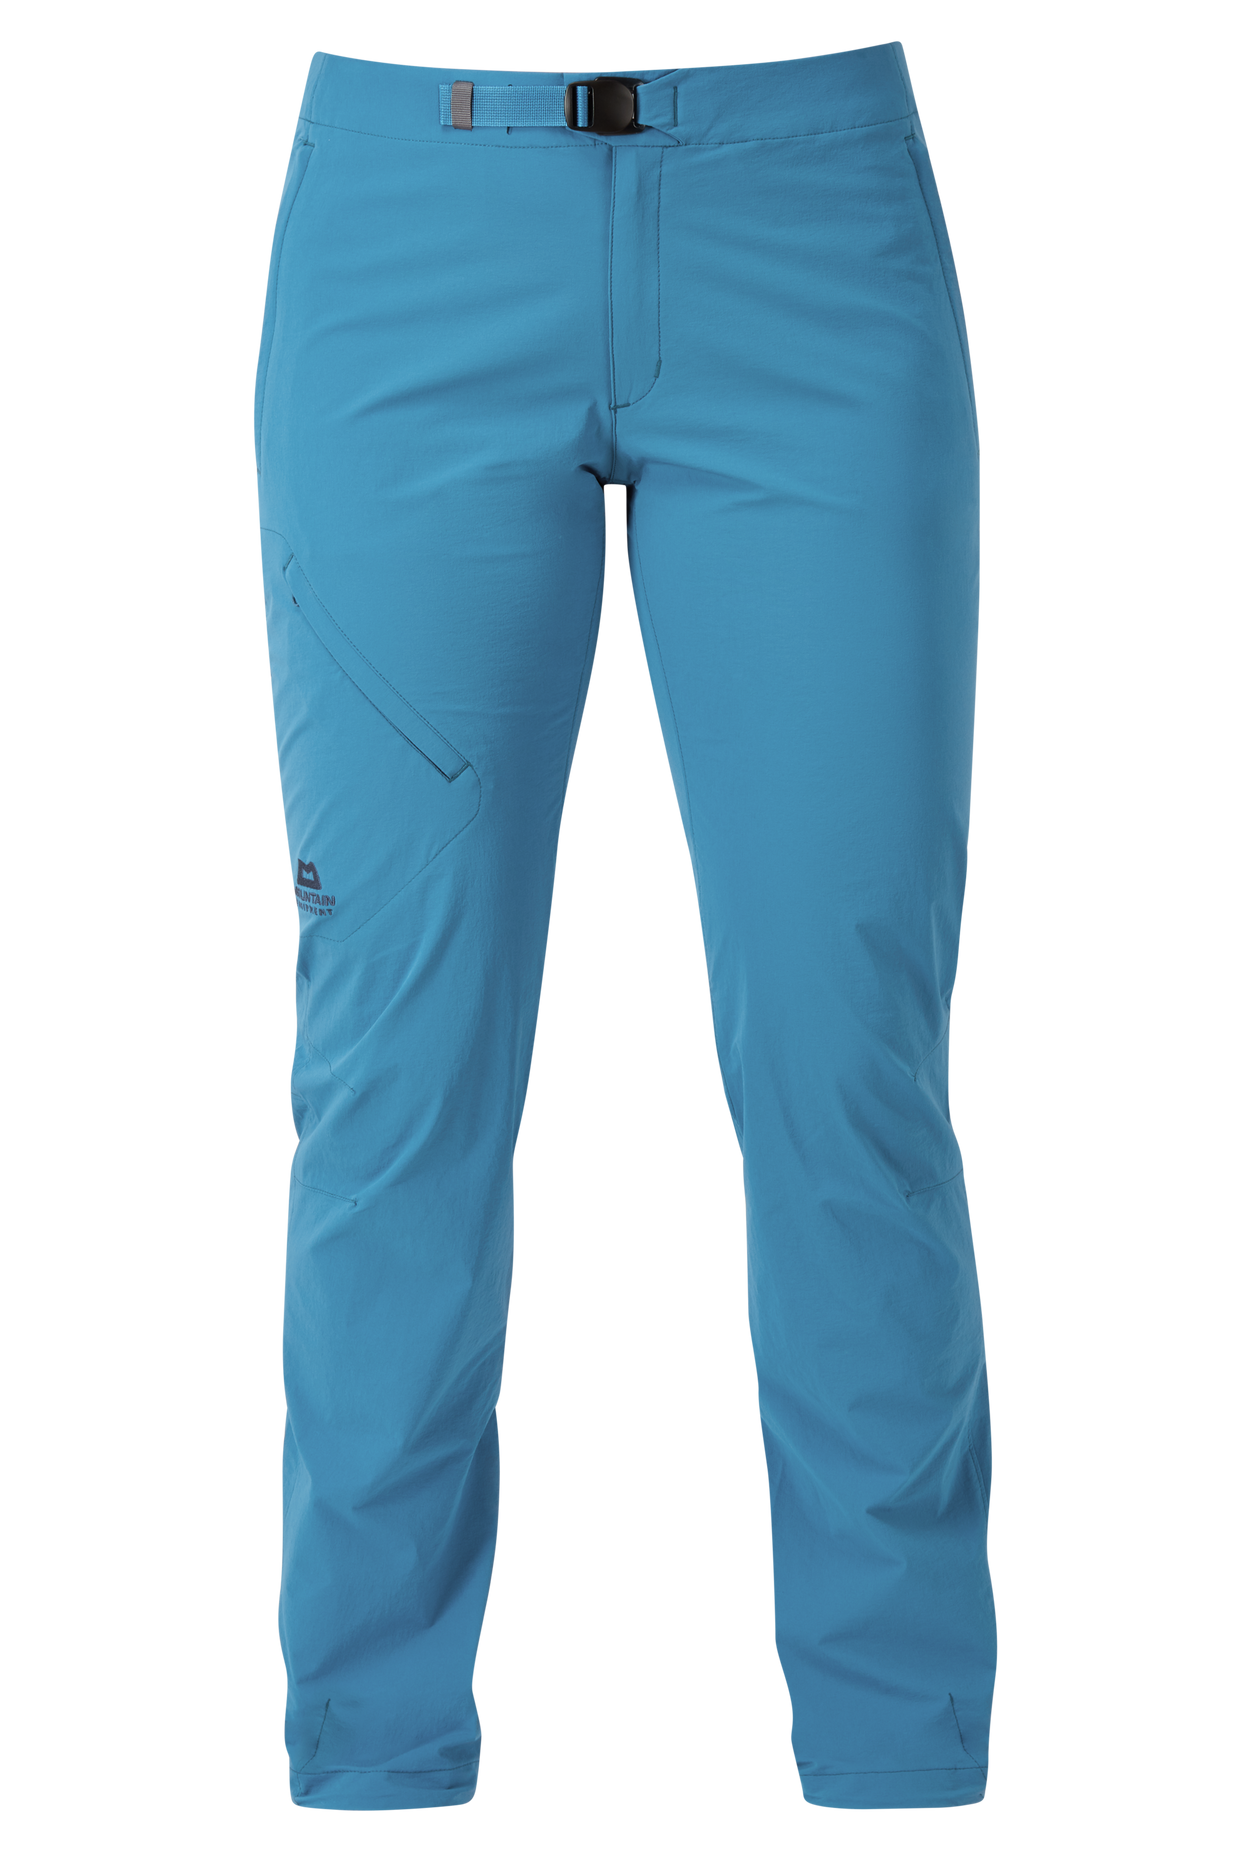 Mountain Equipment dámské softshellové kalhoty Comici Wmns Pant Barva: Alto Blue, Velikost: 10/S